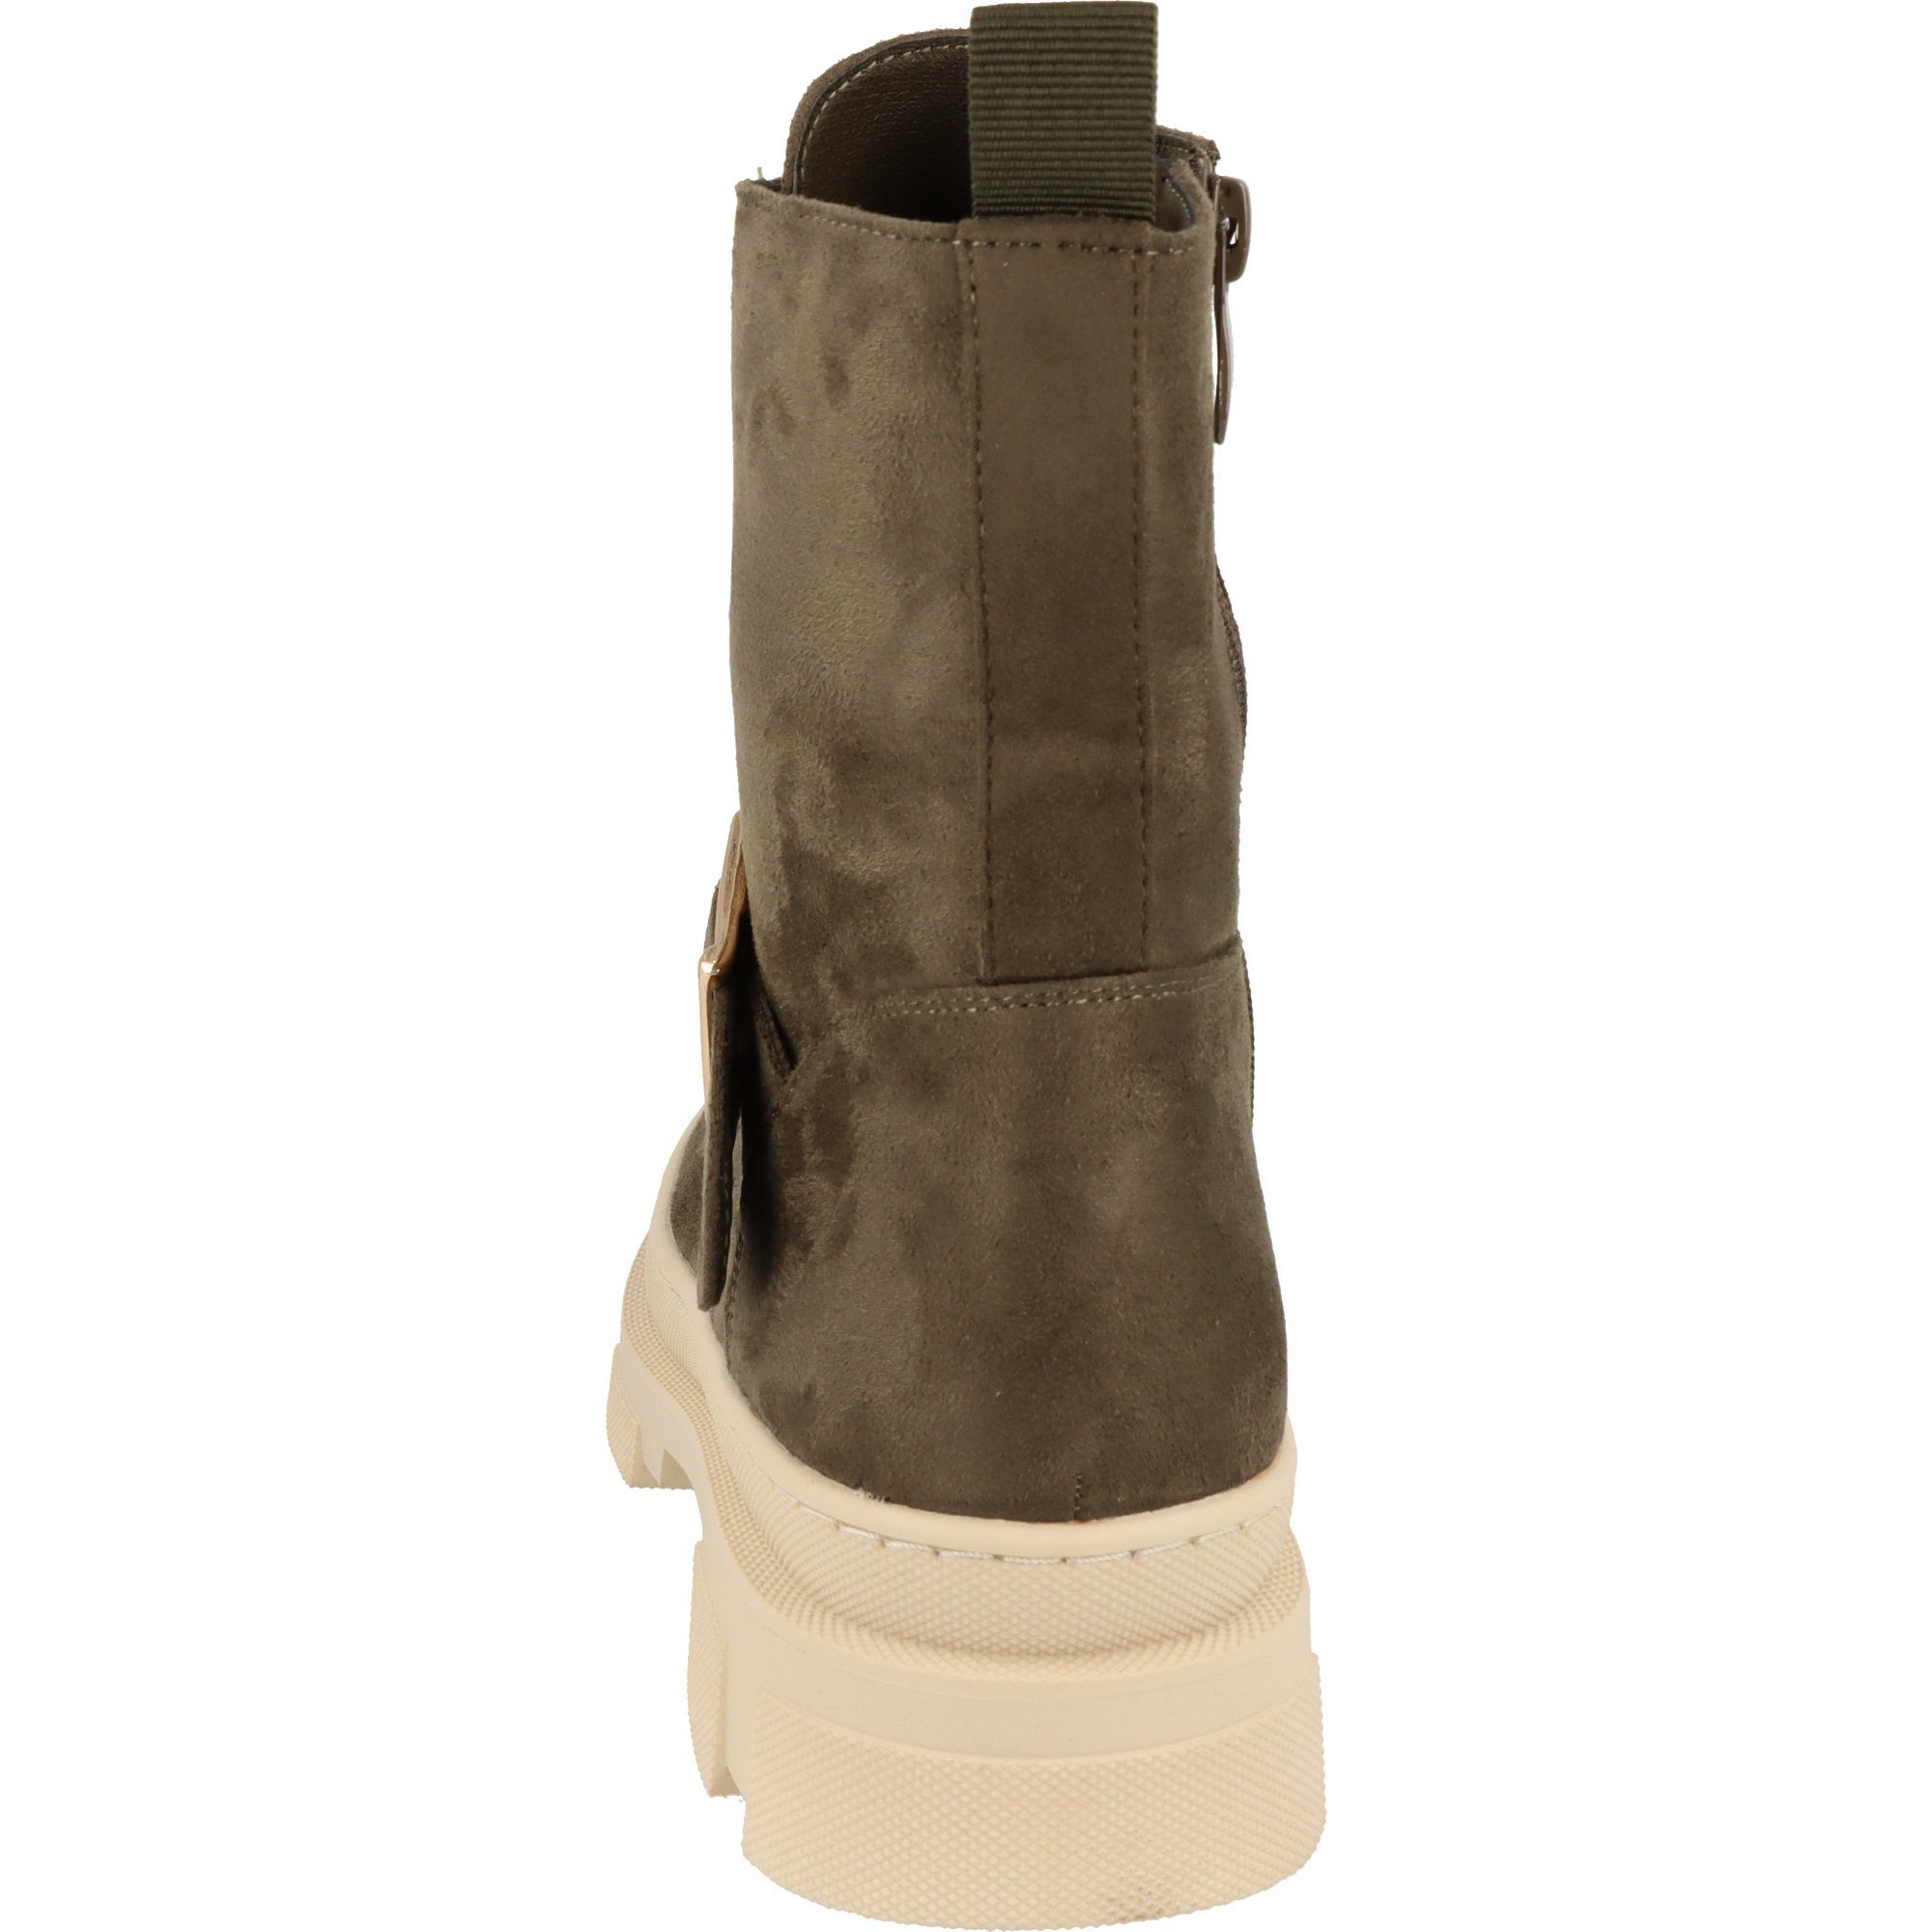 Damen Schnürstiefel stylische Stiefel Kaki La Boots Strada Micro Schuhe 2180776